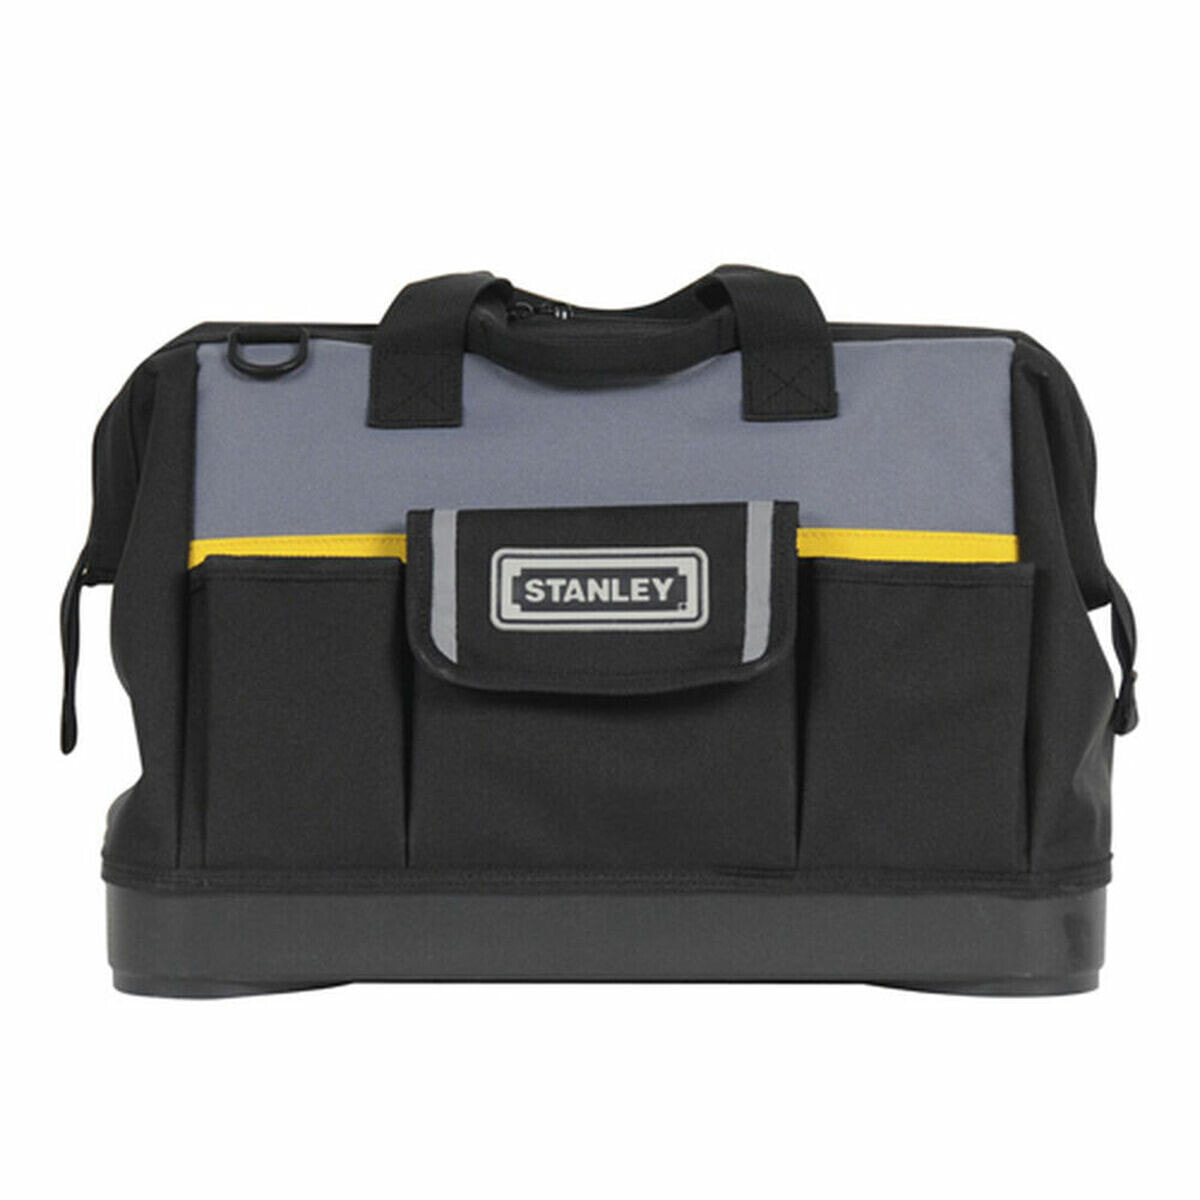 Tool bag Stanley (44,7 x 27,5 x 23,5 cm)